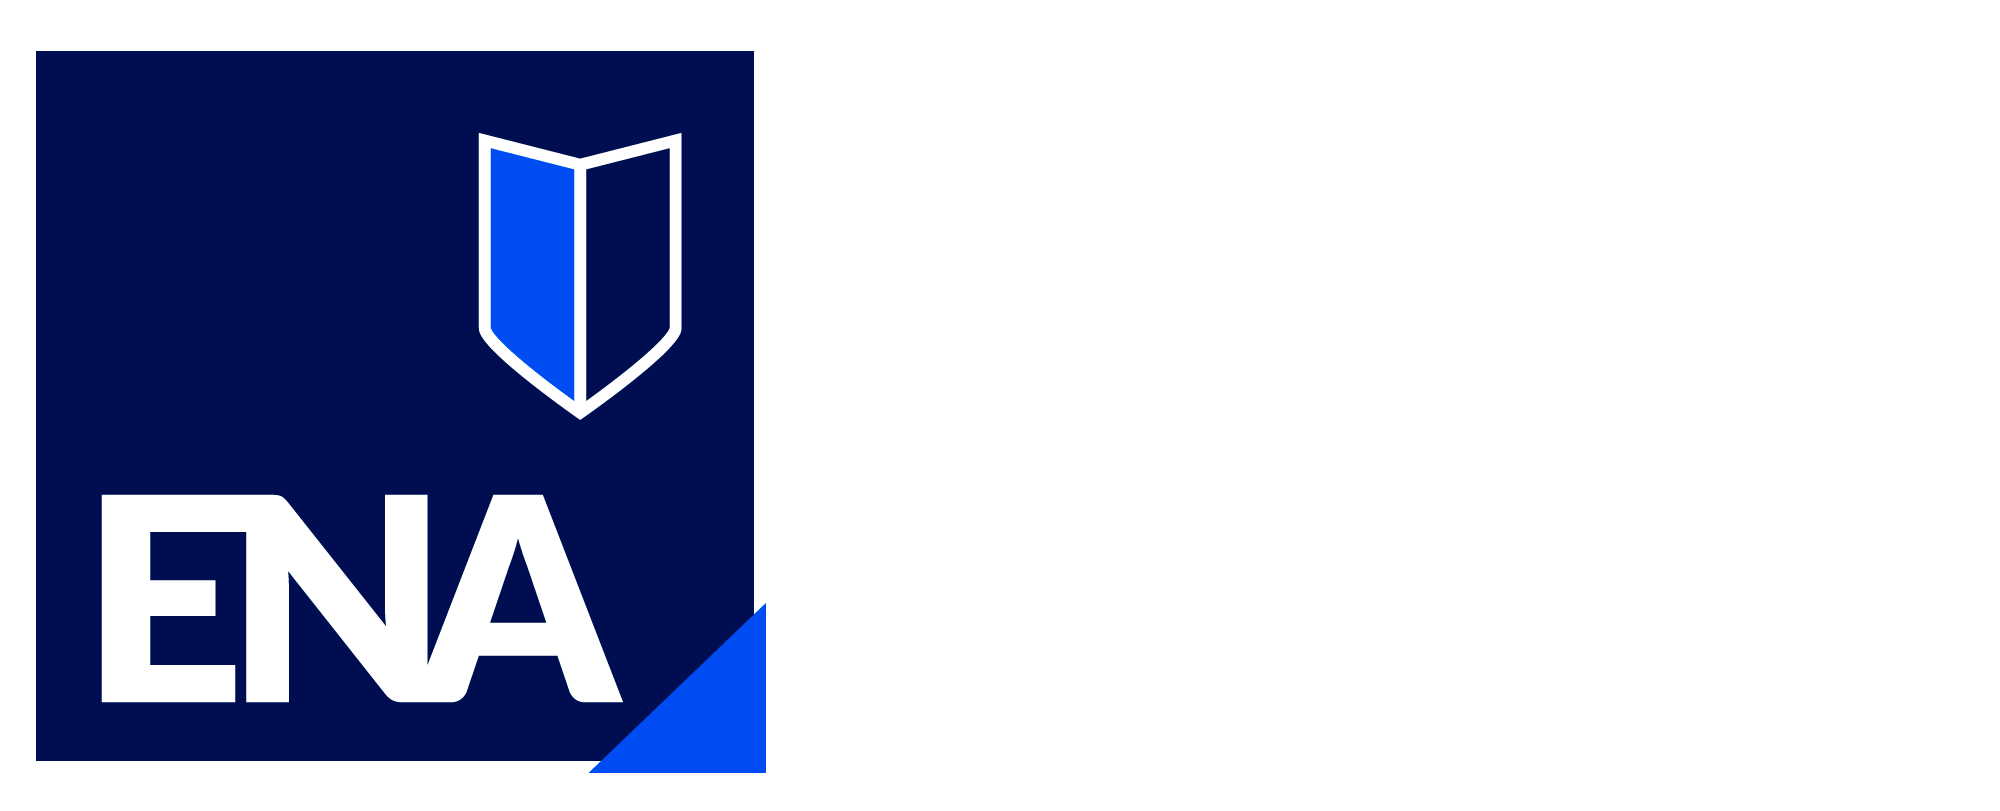 Escuela de Negocios de Los Andes